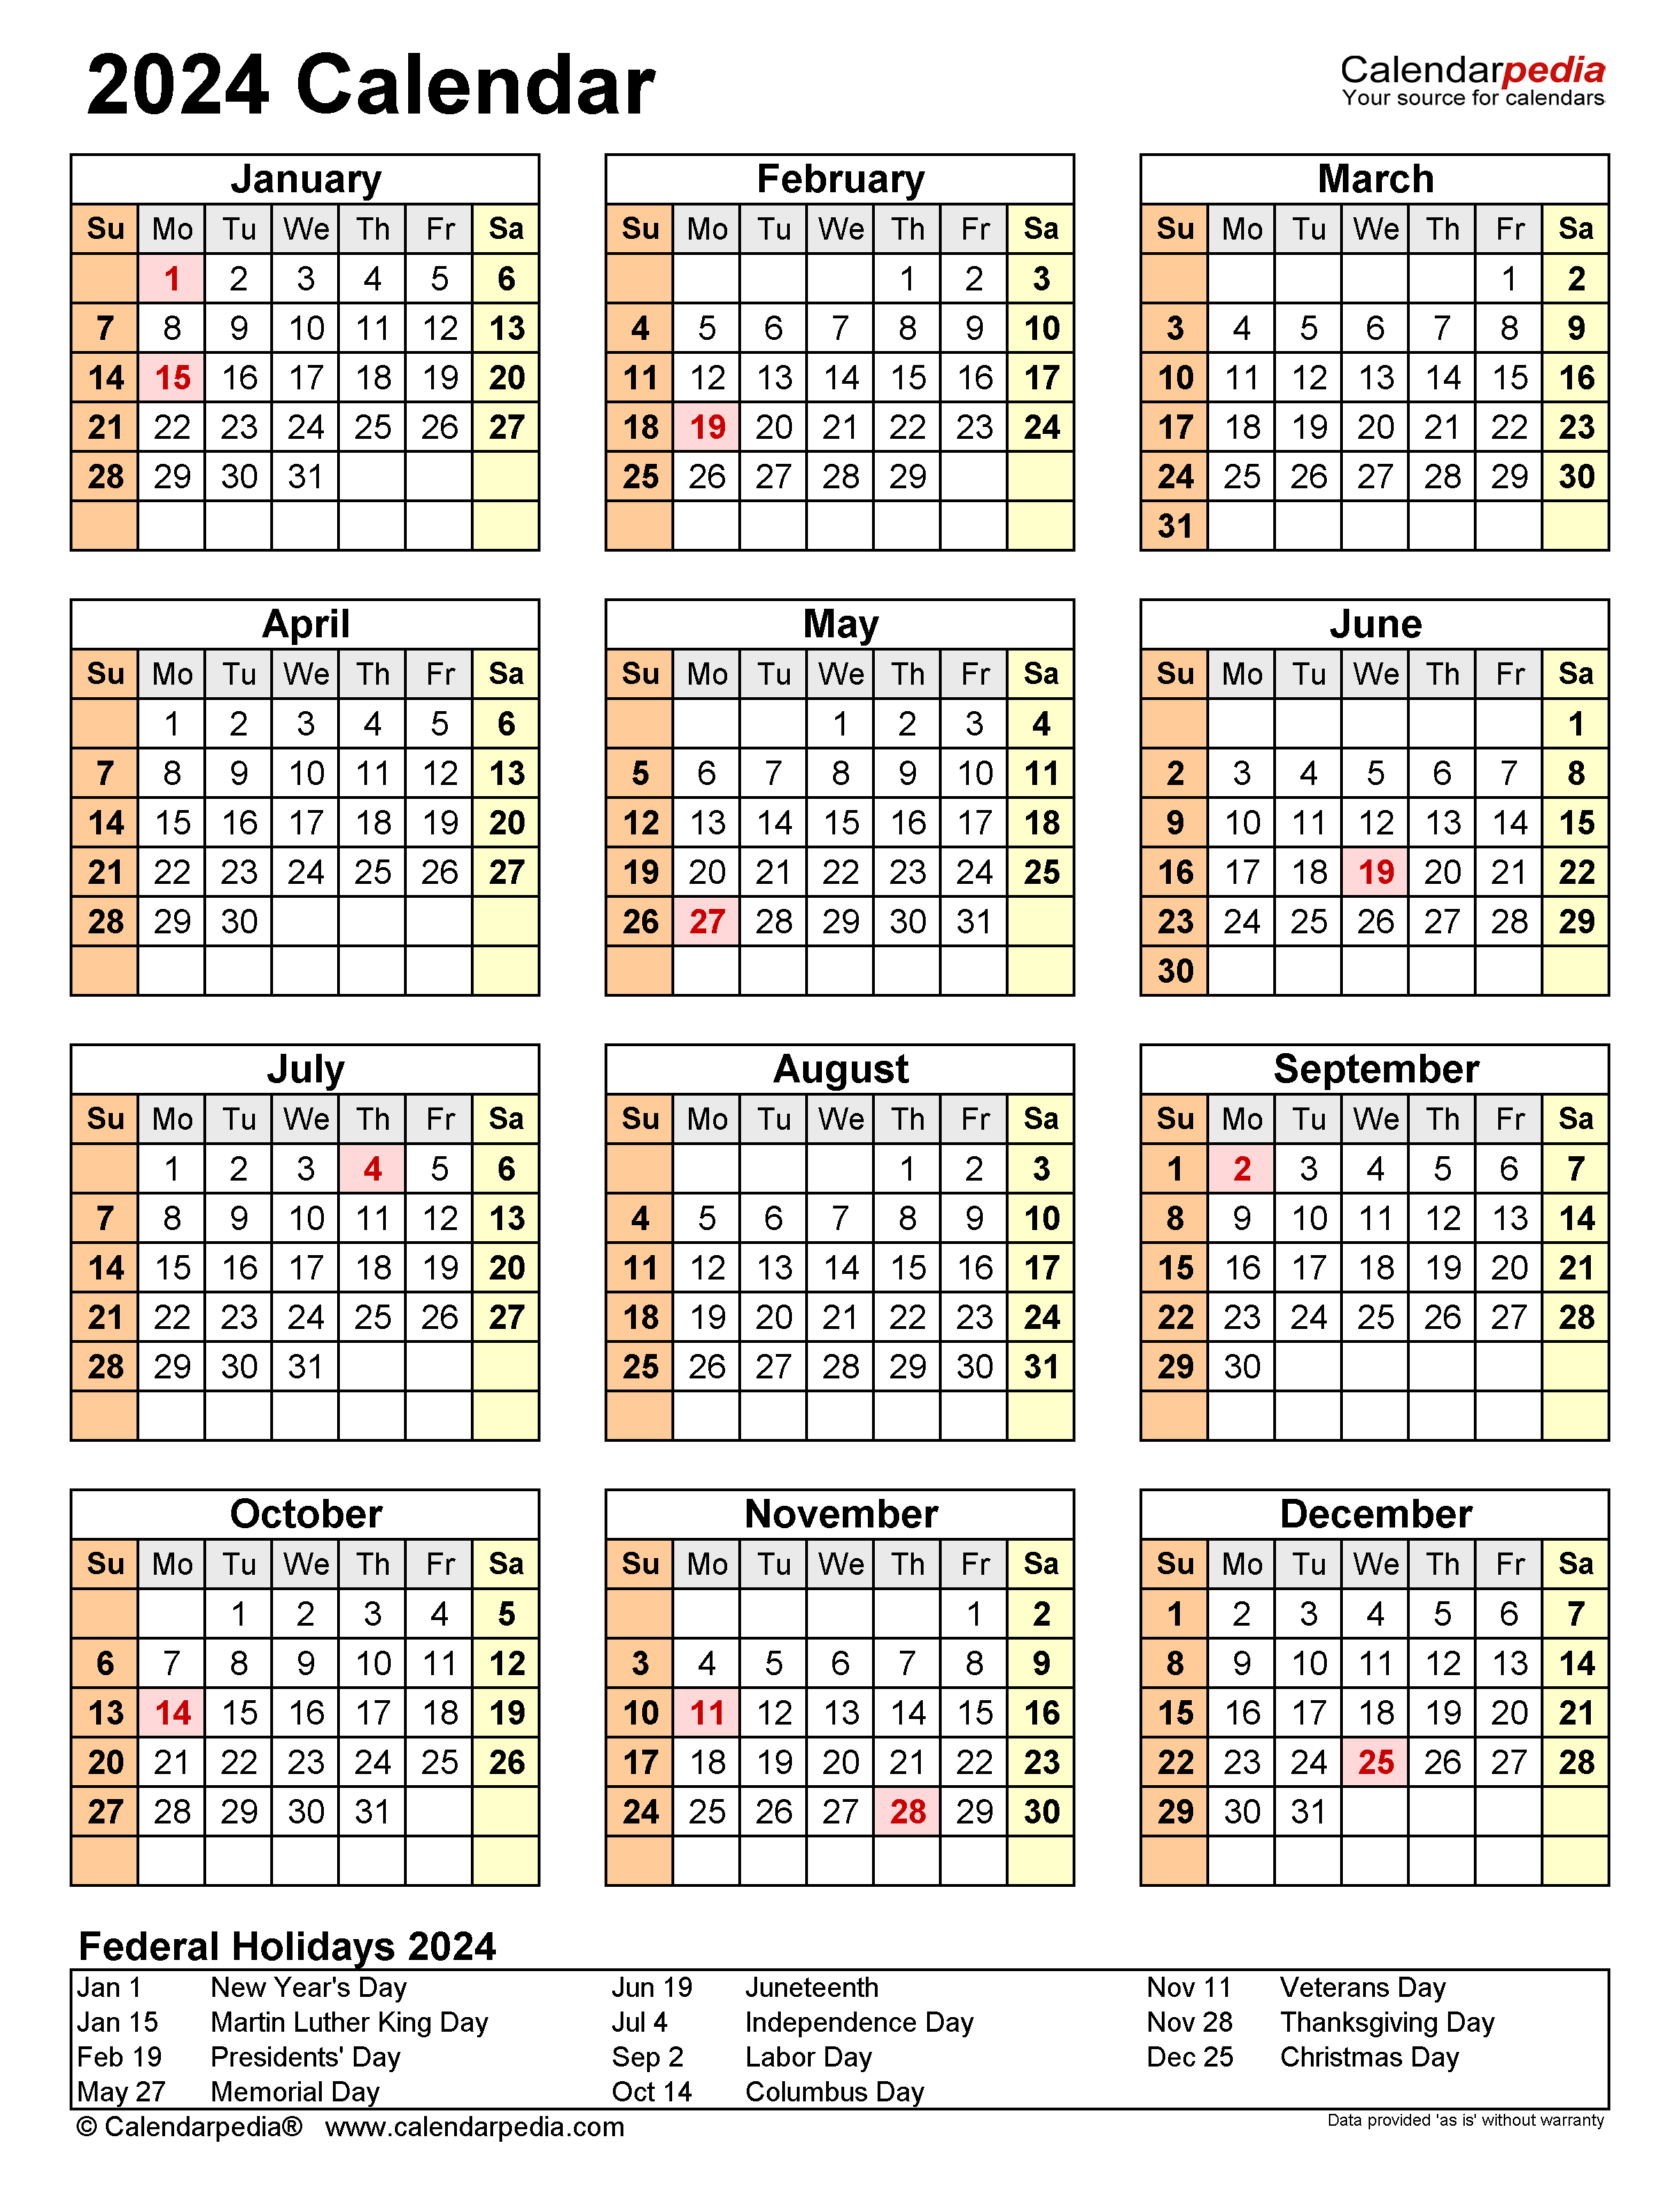 Free Printable 2024 Calendar With Holidays Crownflourmills - Free Printable 2024 Calendar With Holidays Usa Printable